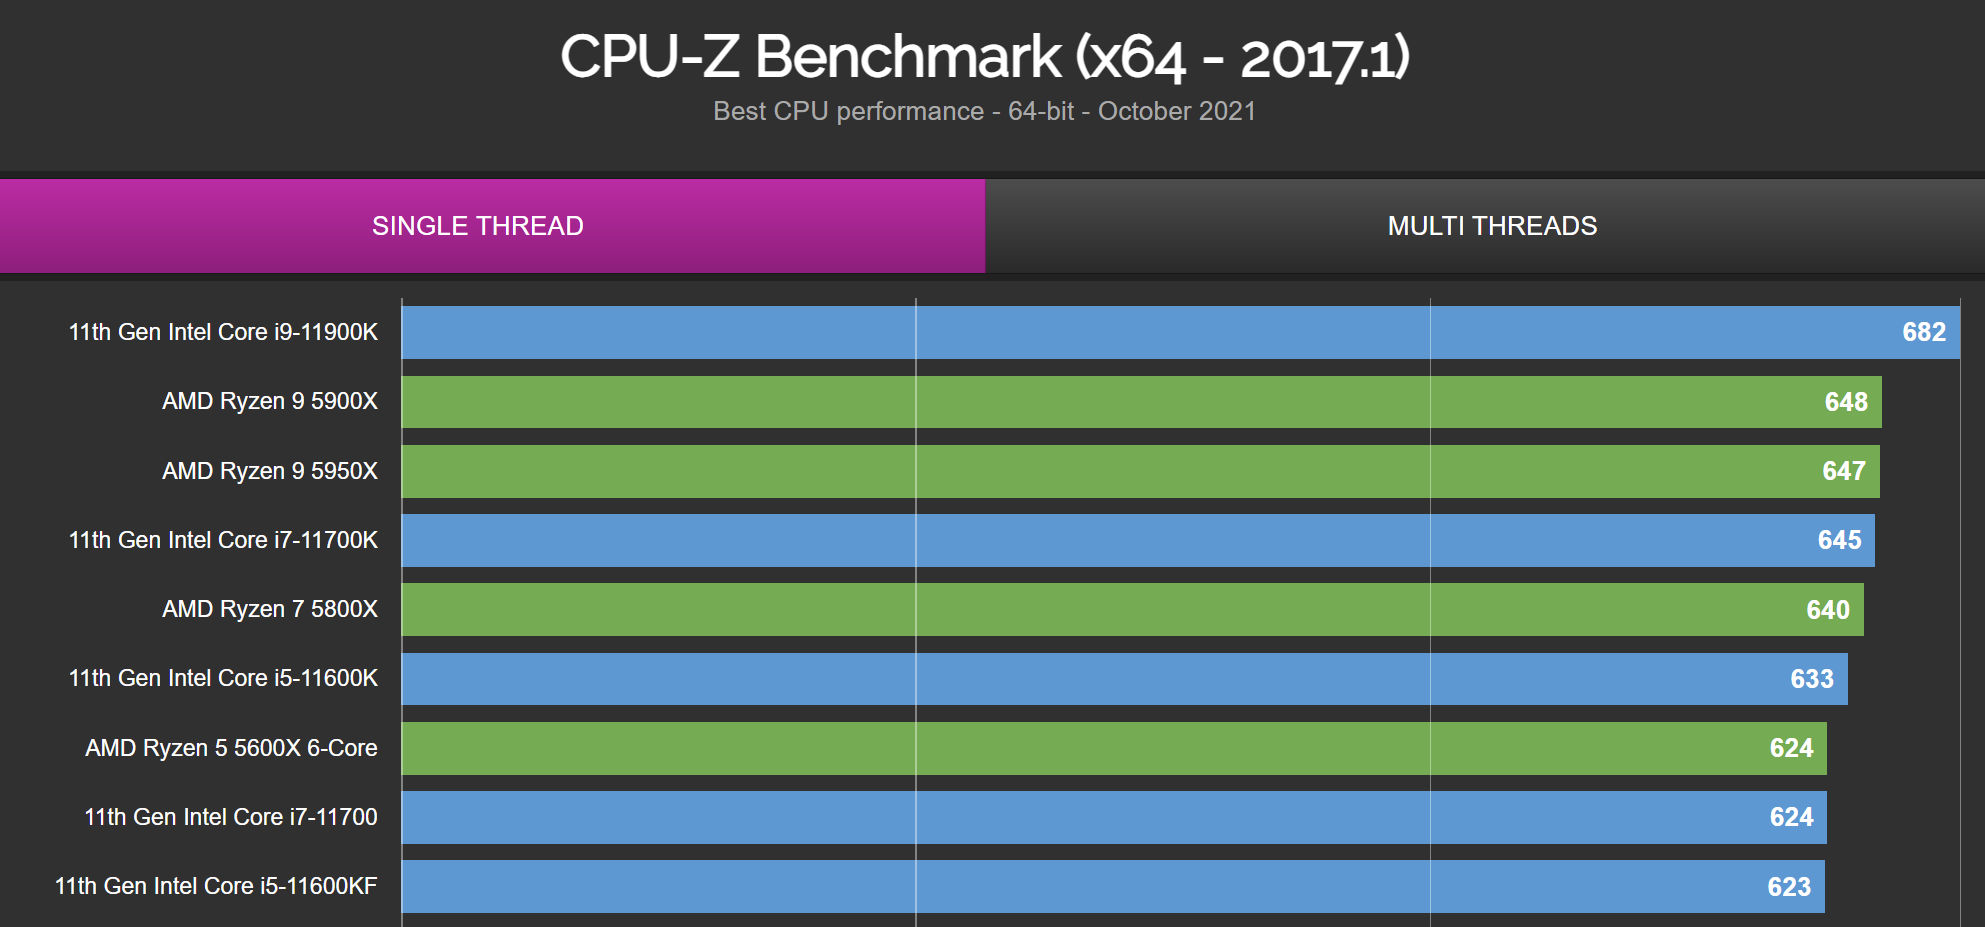 Intel Core i7-12700K crosses 800 points in CPU-Z benchmark - VideoCardz.com